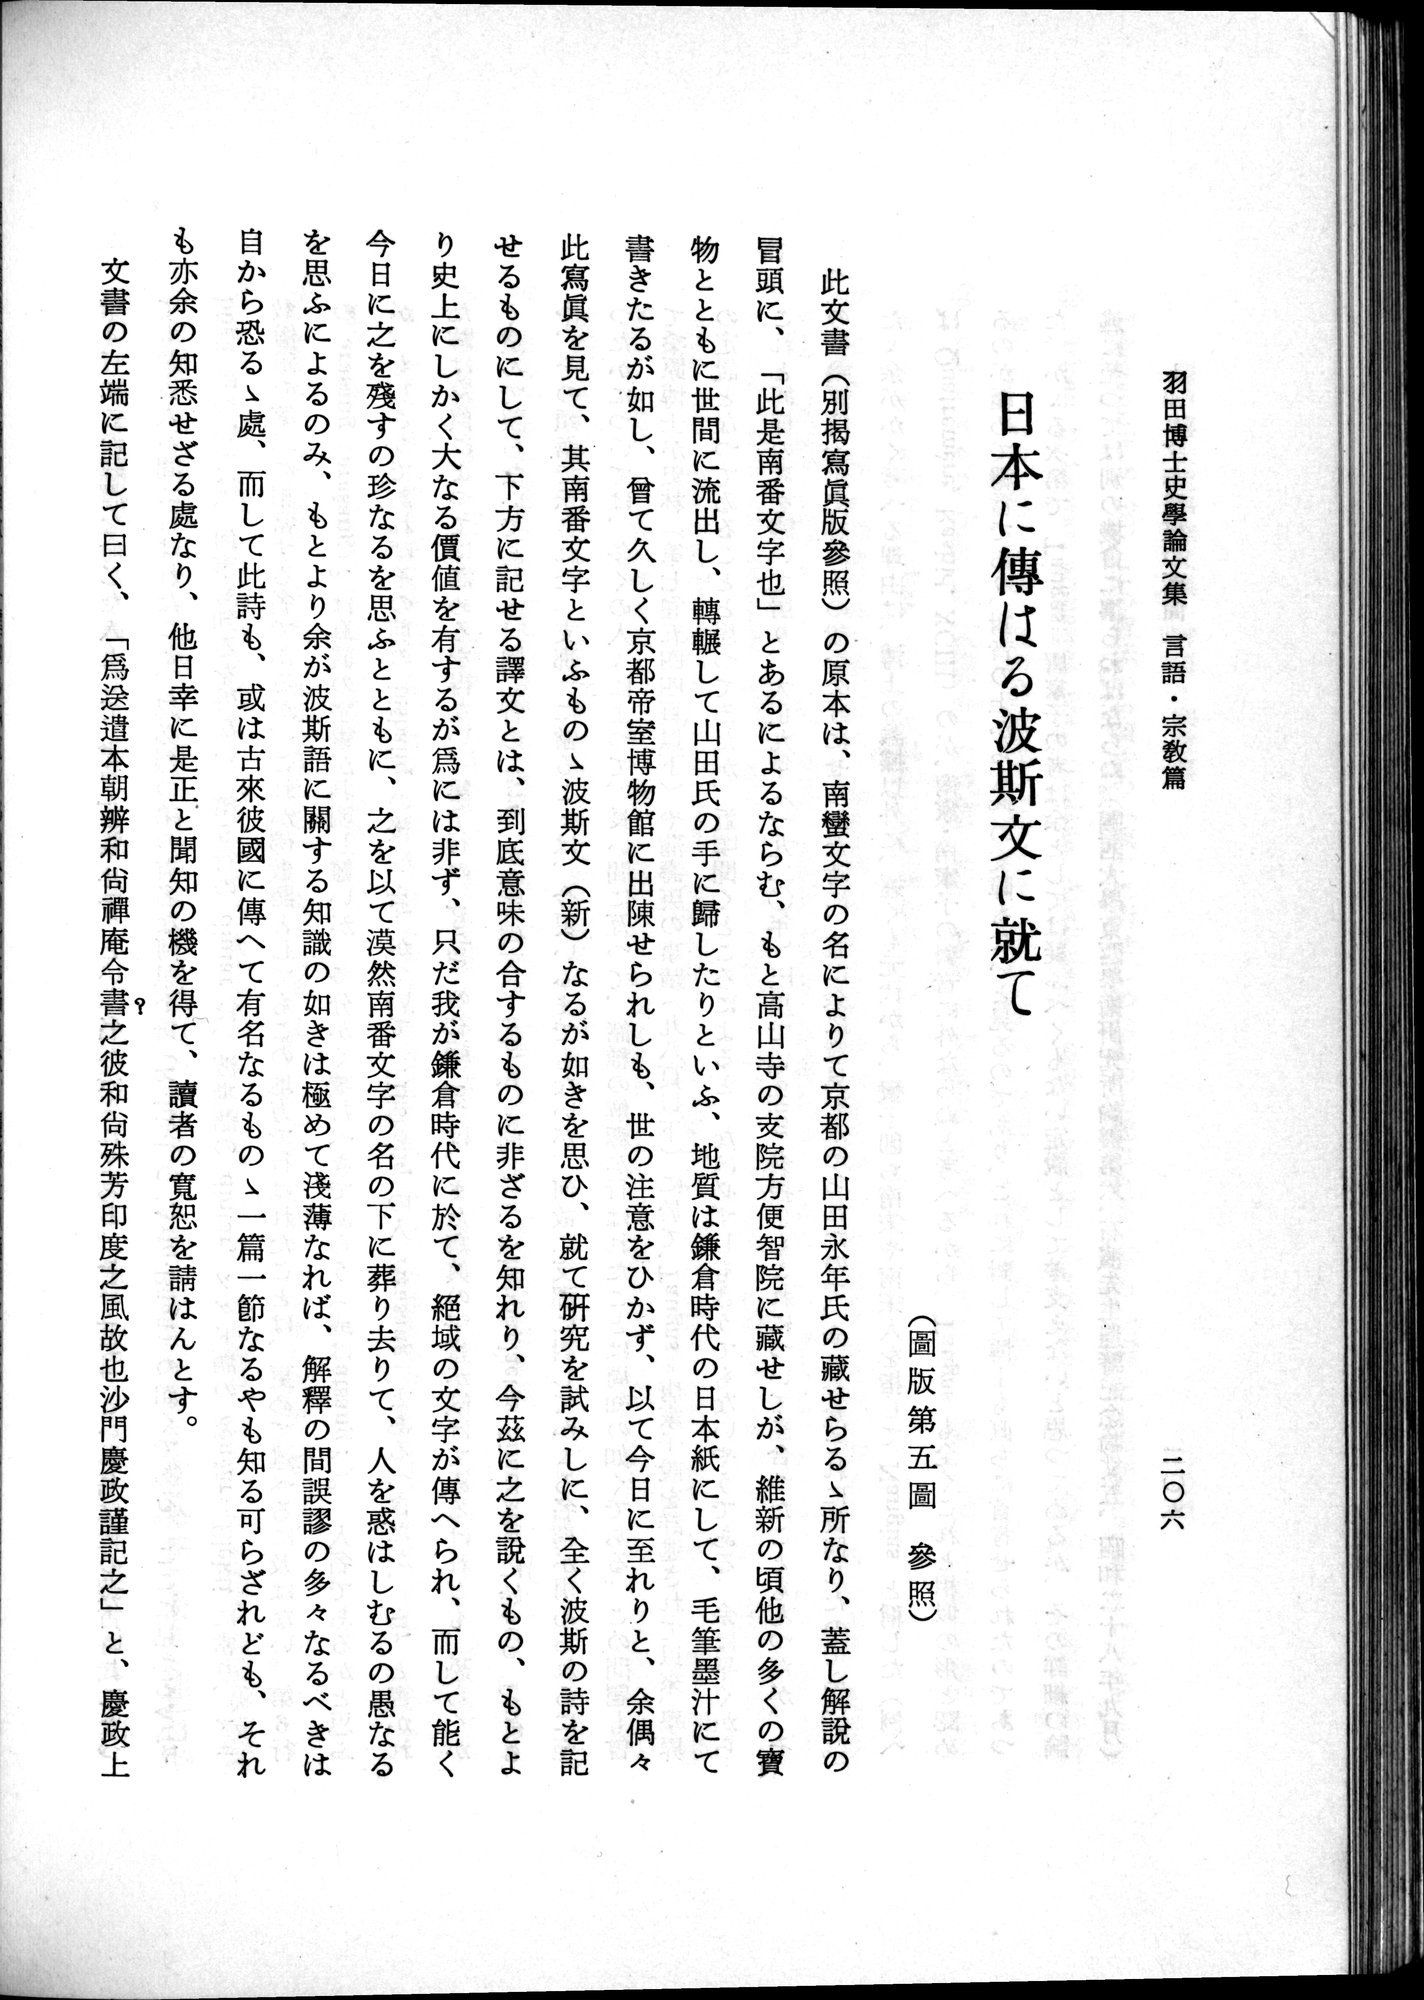 羽田博士史学論文集 : vol.2 / 268 ページ（白黒高解像度画像）